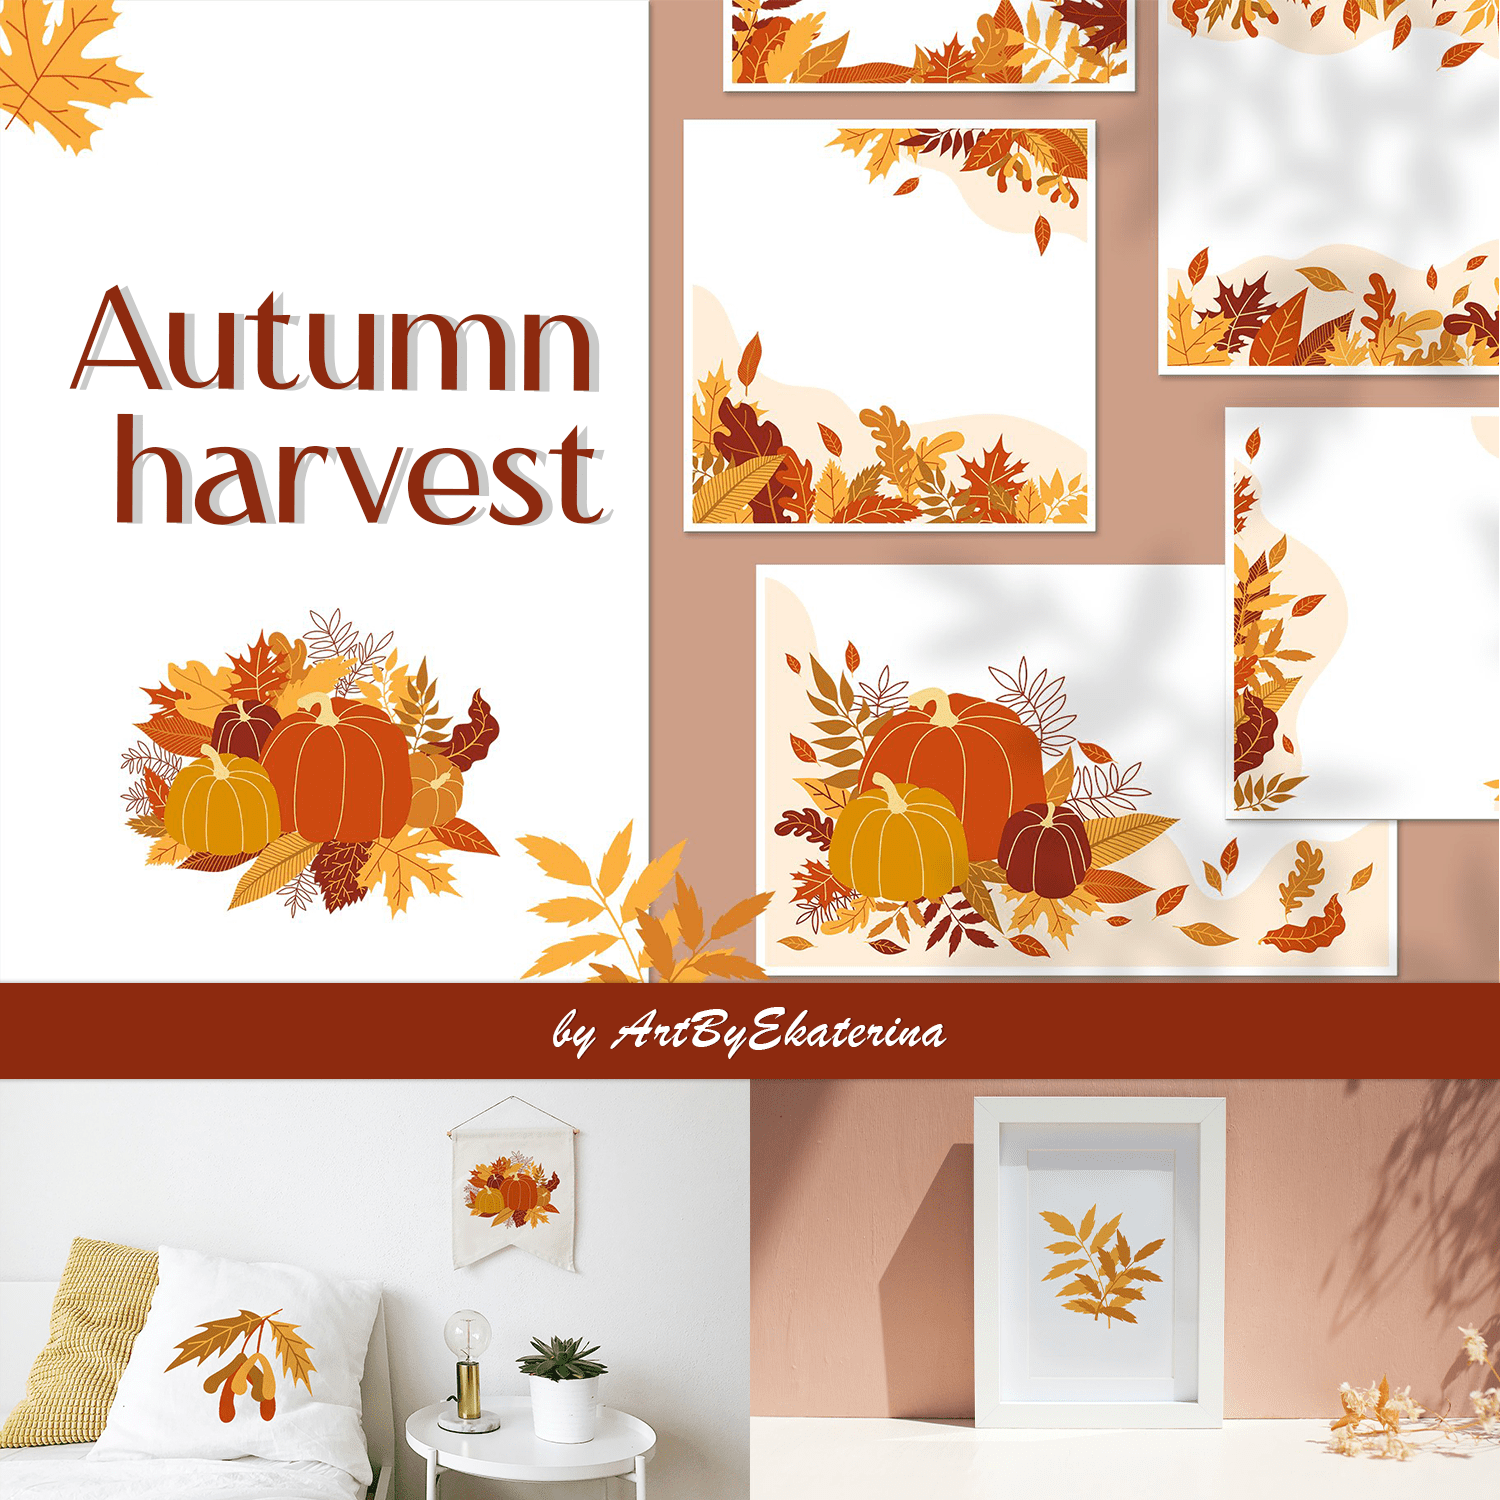 Autumn harvest.